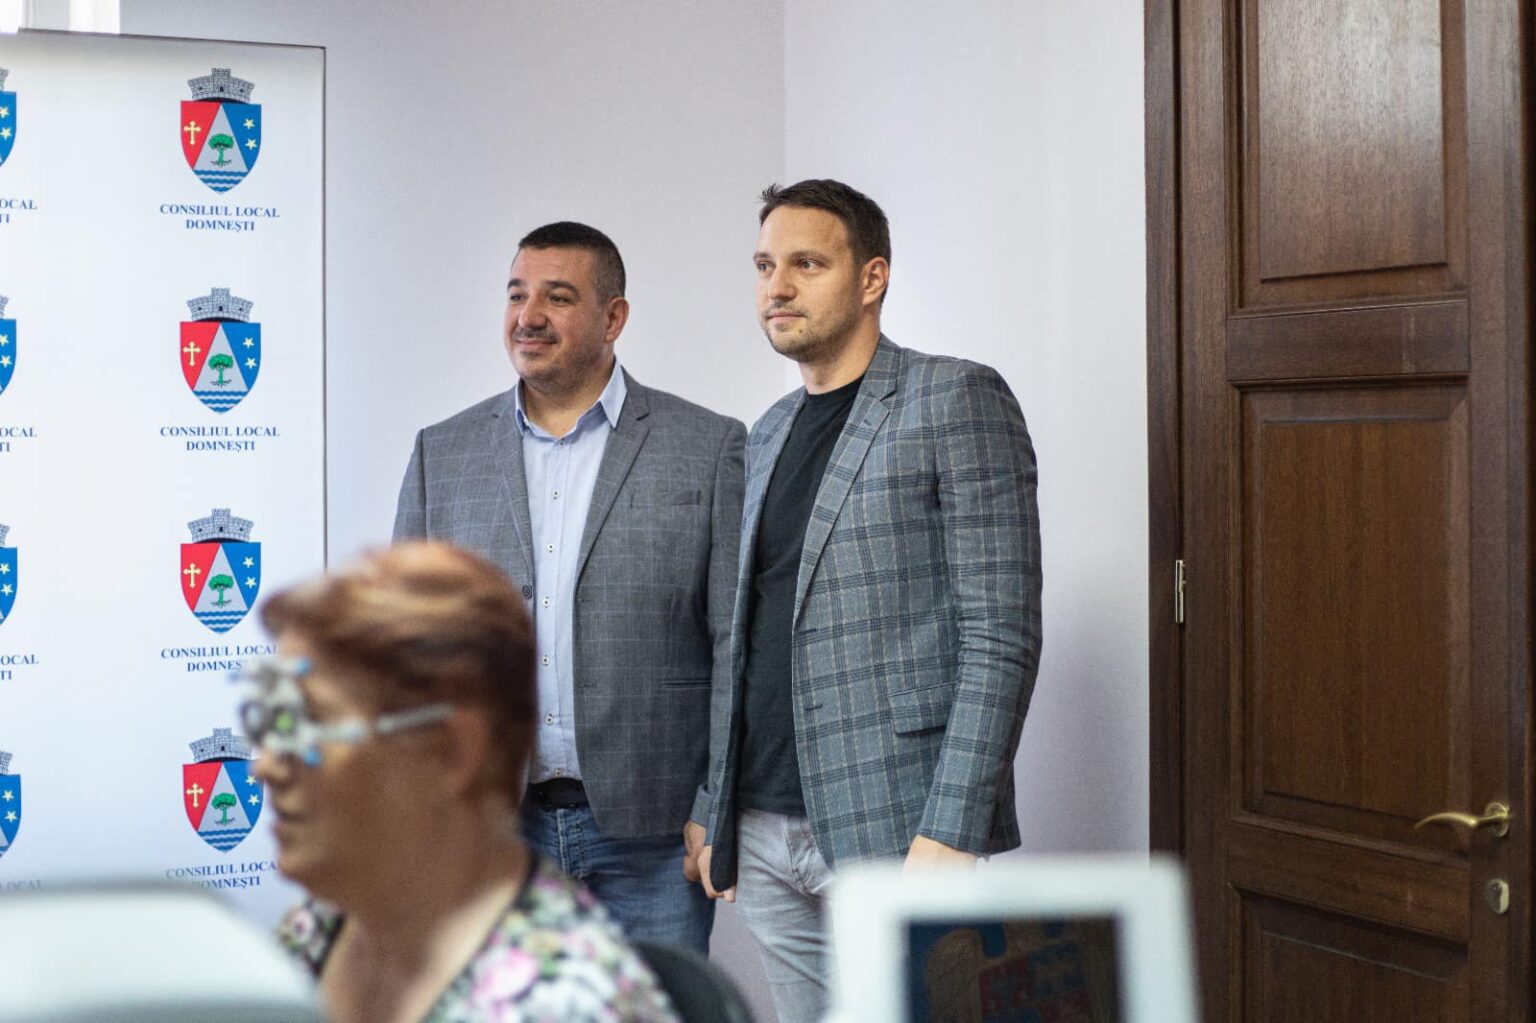 Primarul comunei Domneşti, Adrian Ghiţă, şi vicepreşedintele CJ Ilfov Ştefan Rădulescu